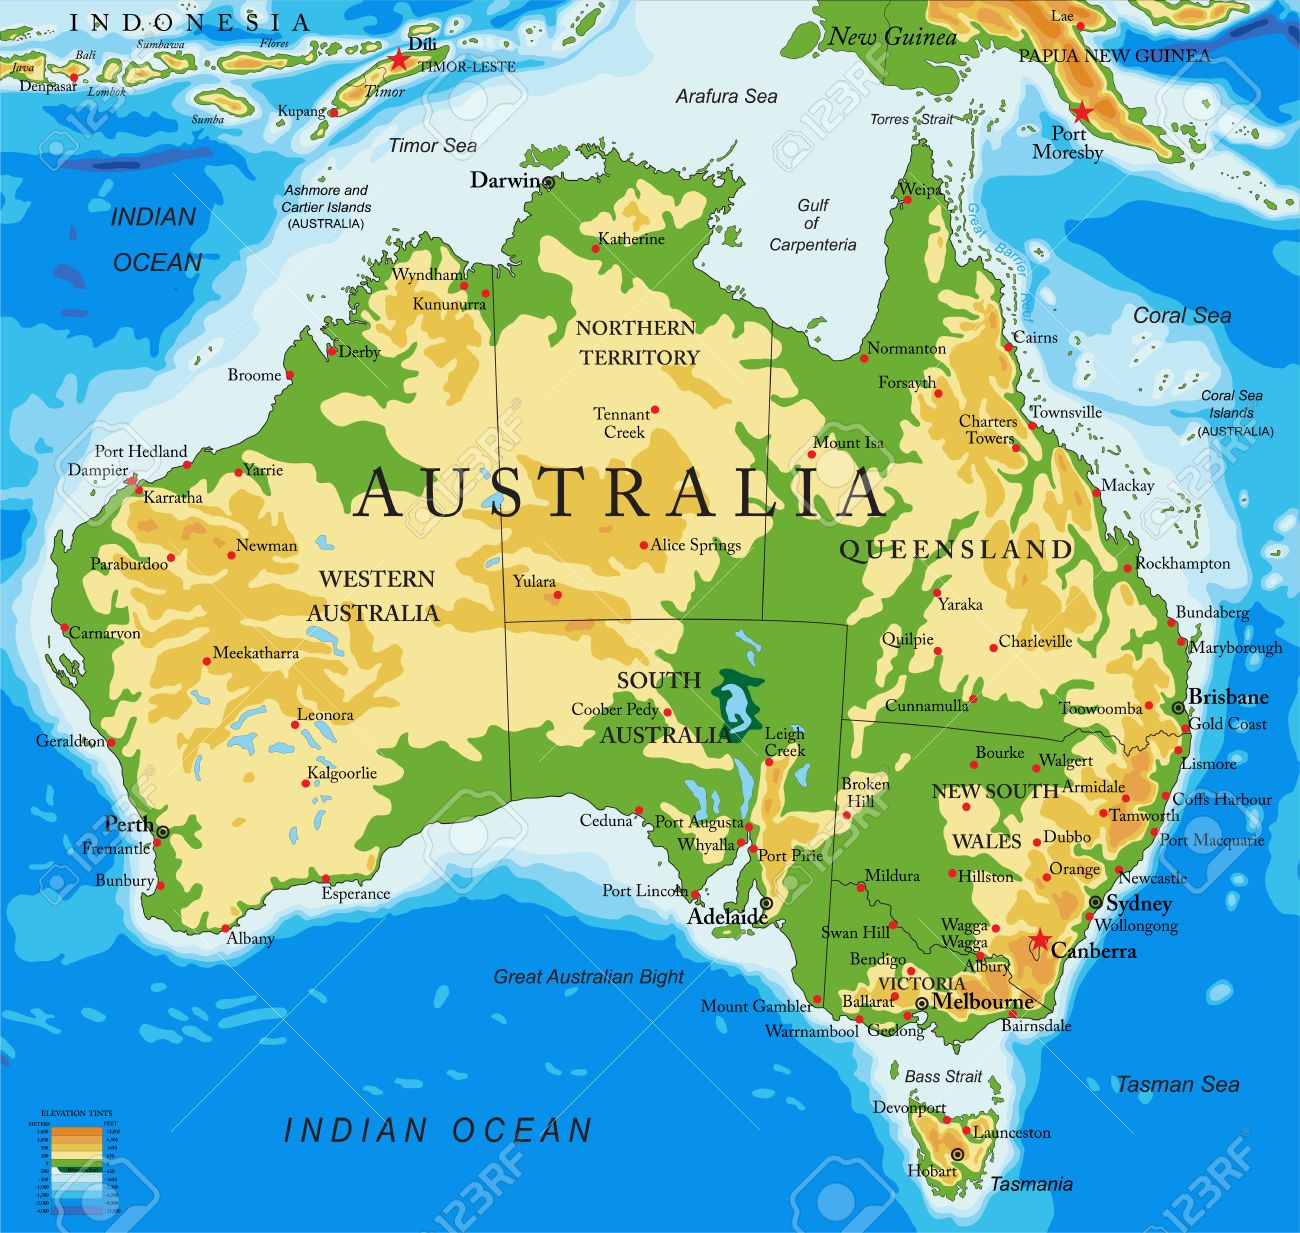 MAPA DE AUSTRALIA 